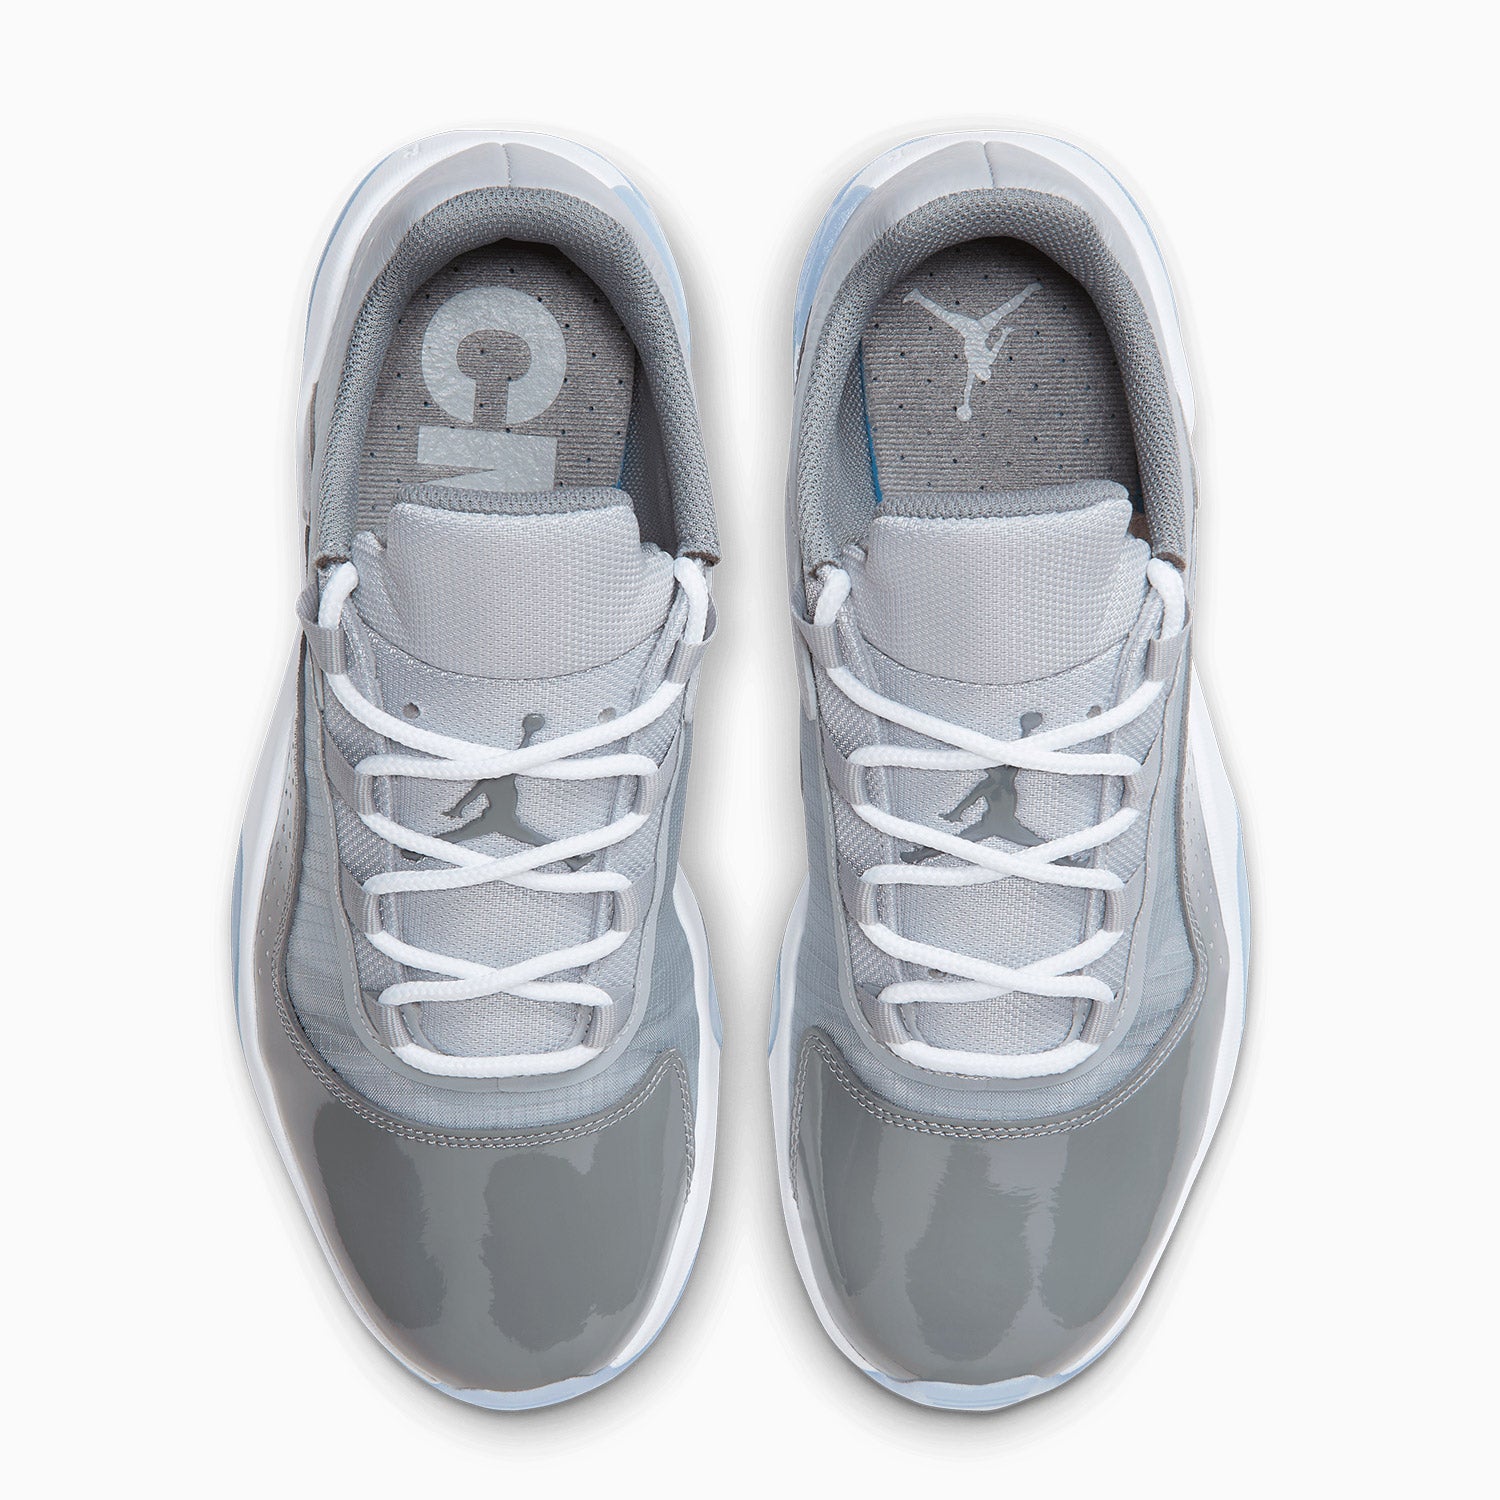 mens-air-jordan-11-cmft-low-cool-grey-shoes-dn4180-012